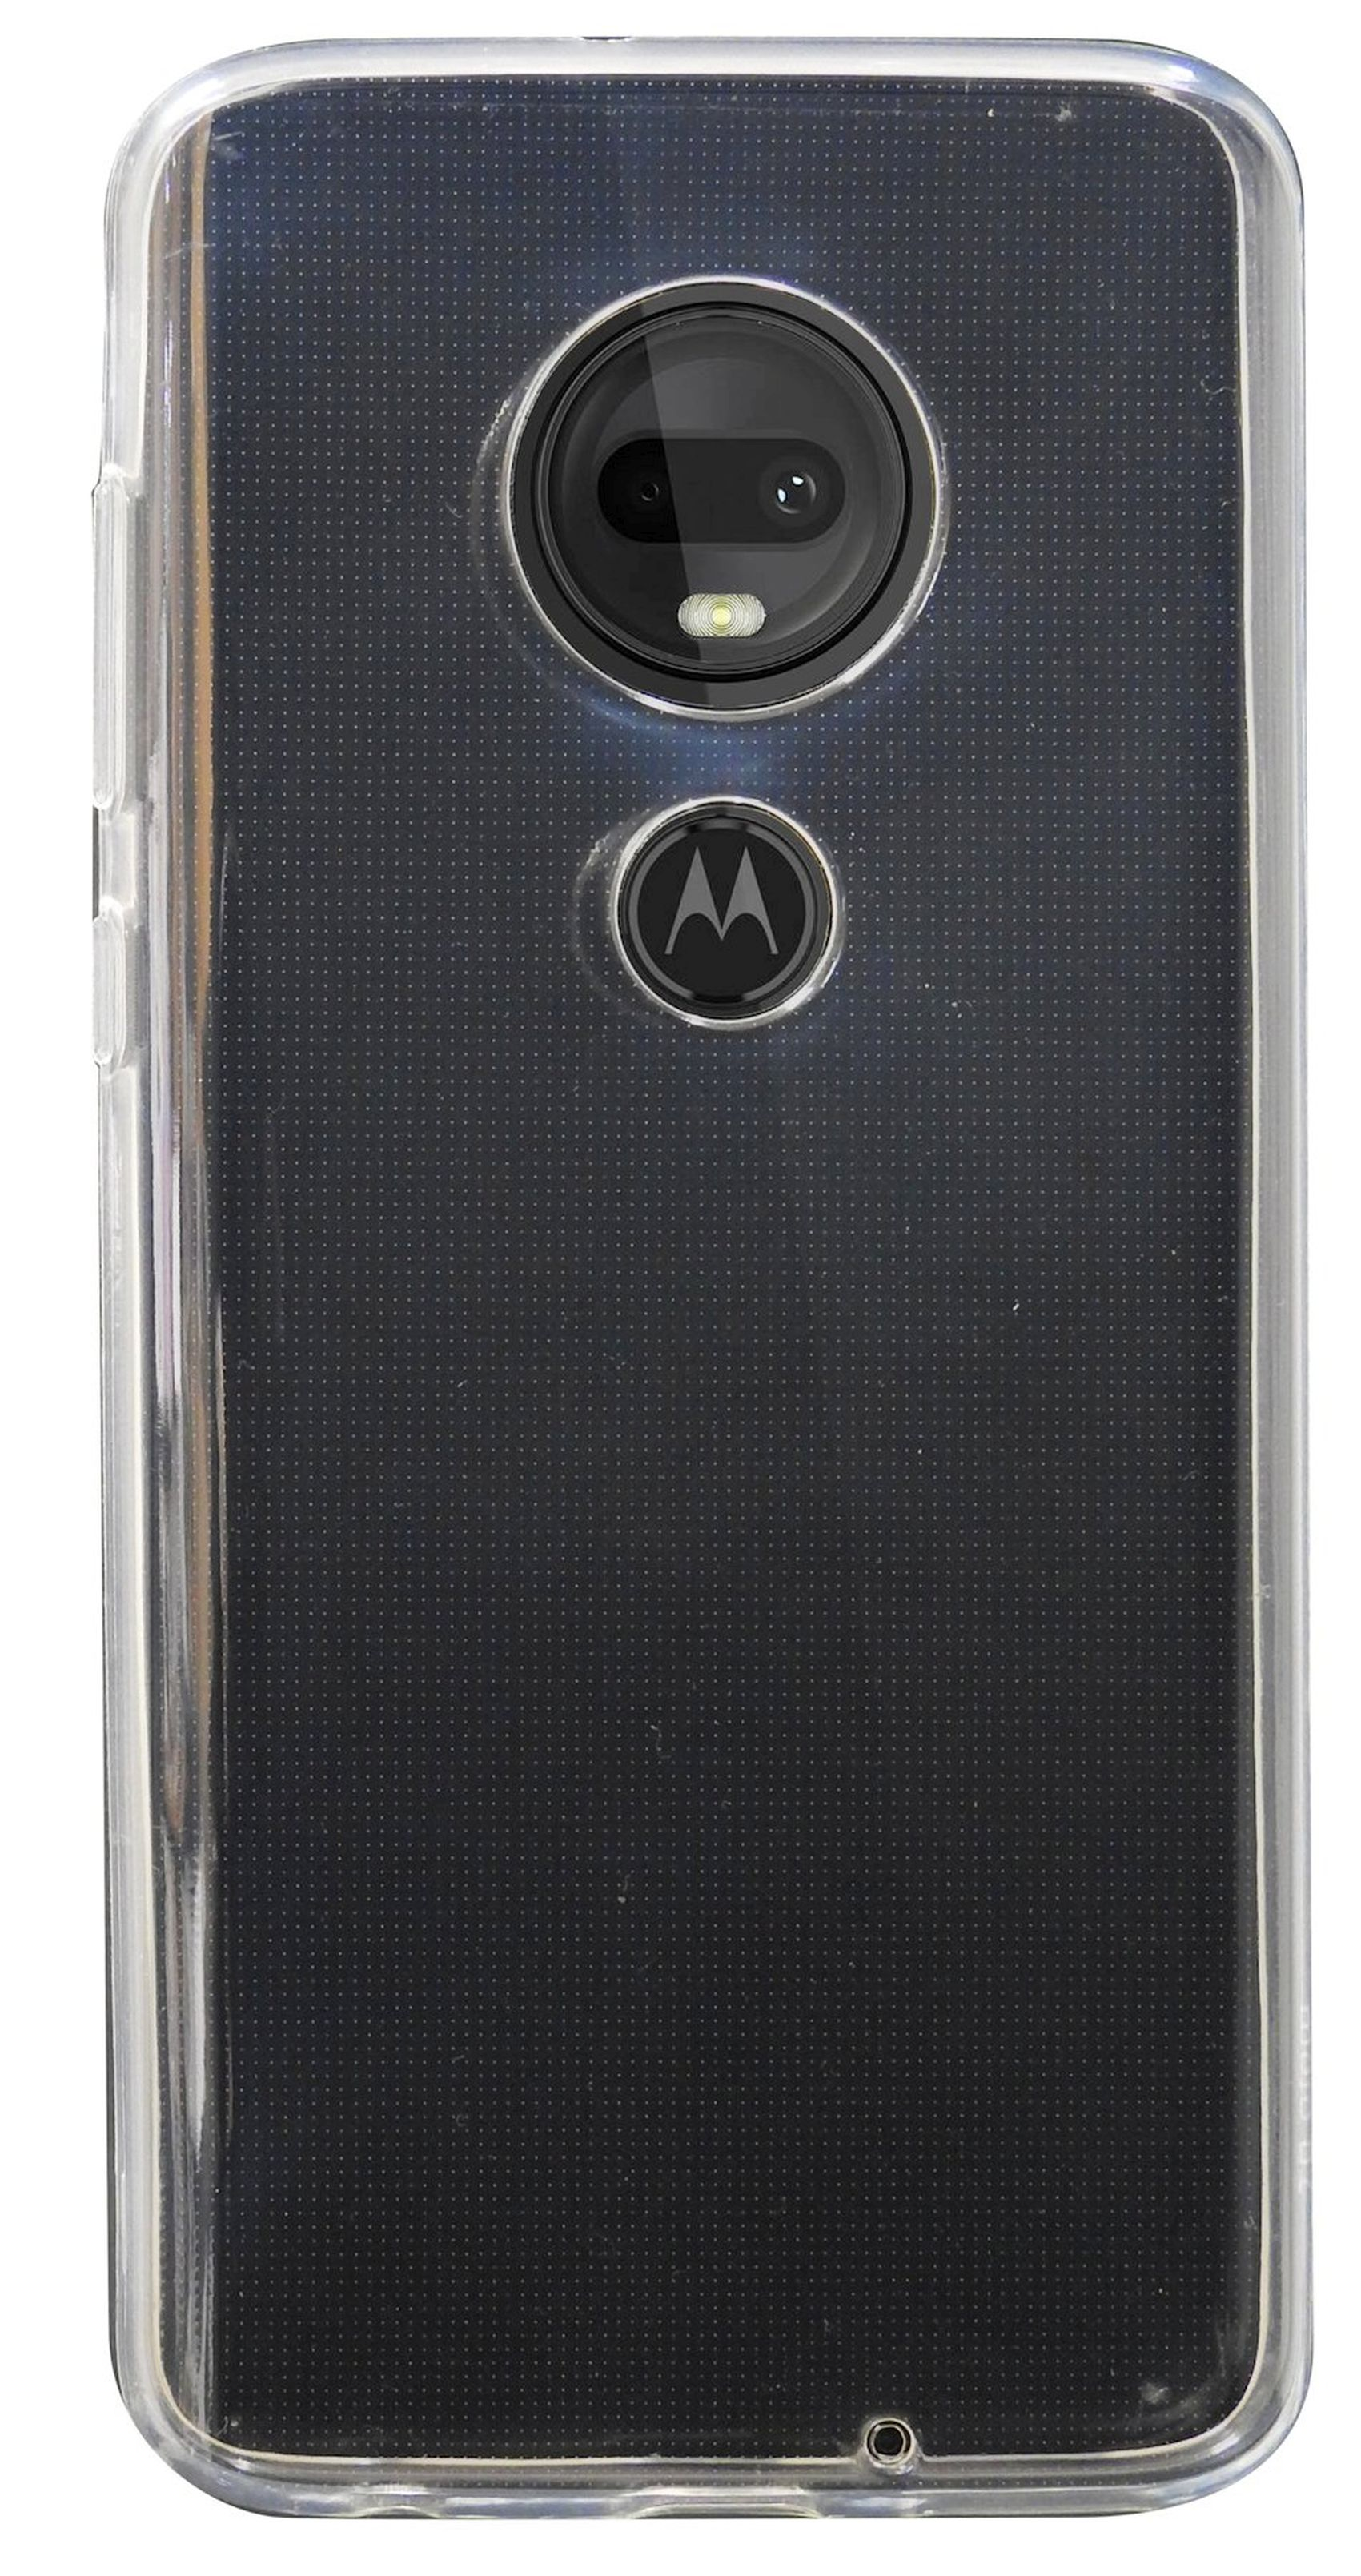 COFI Basic Case, Bumper, Motorola, Transparent Plus, Moto G7